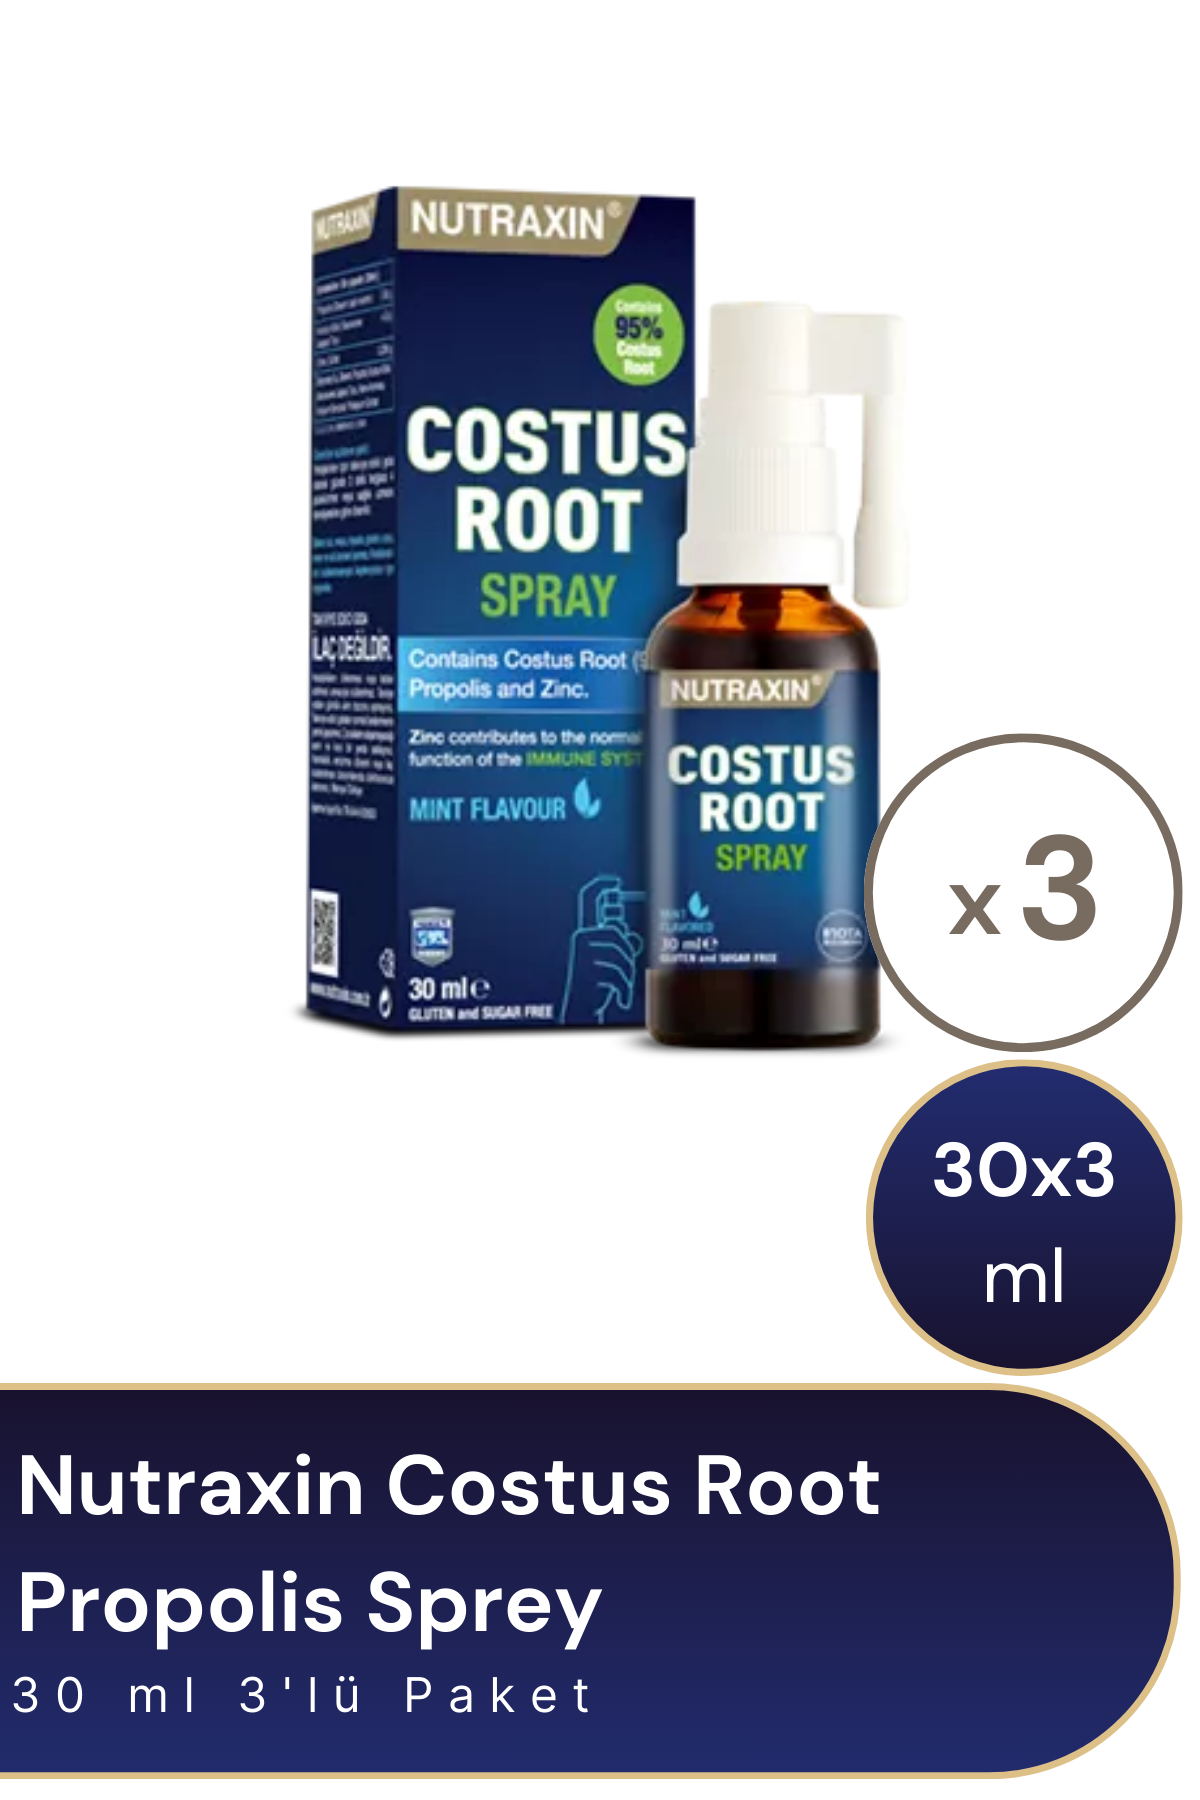 Nutraxin Costus Root Propolis Sprey 30 ml 3'lü Paket